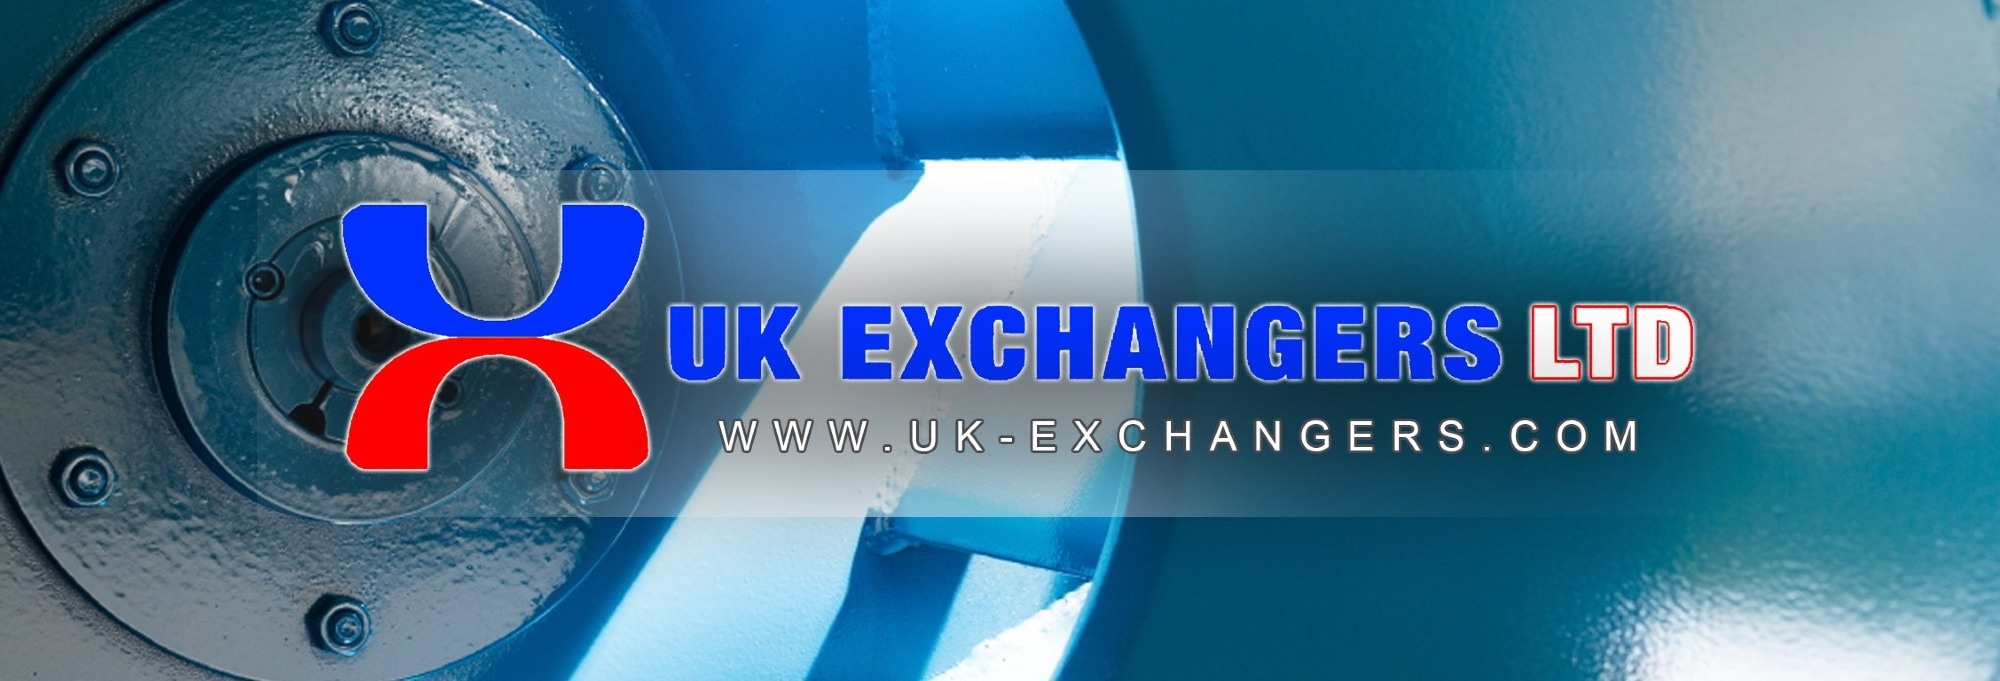 UK Exchangers Ltd.